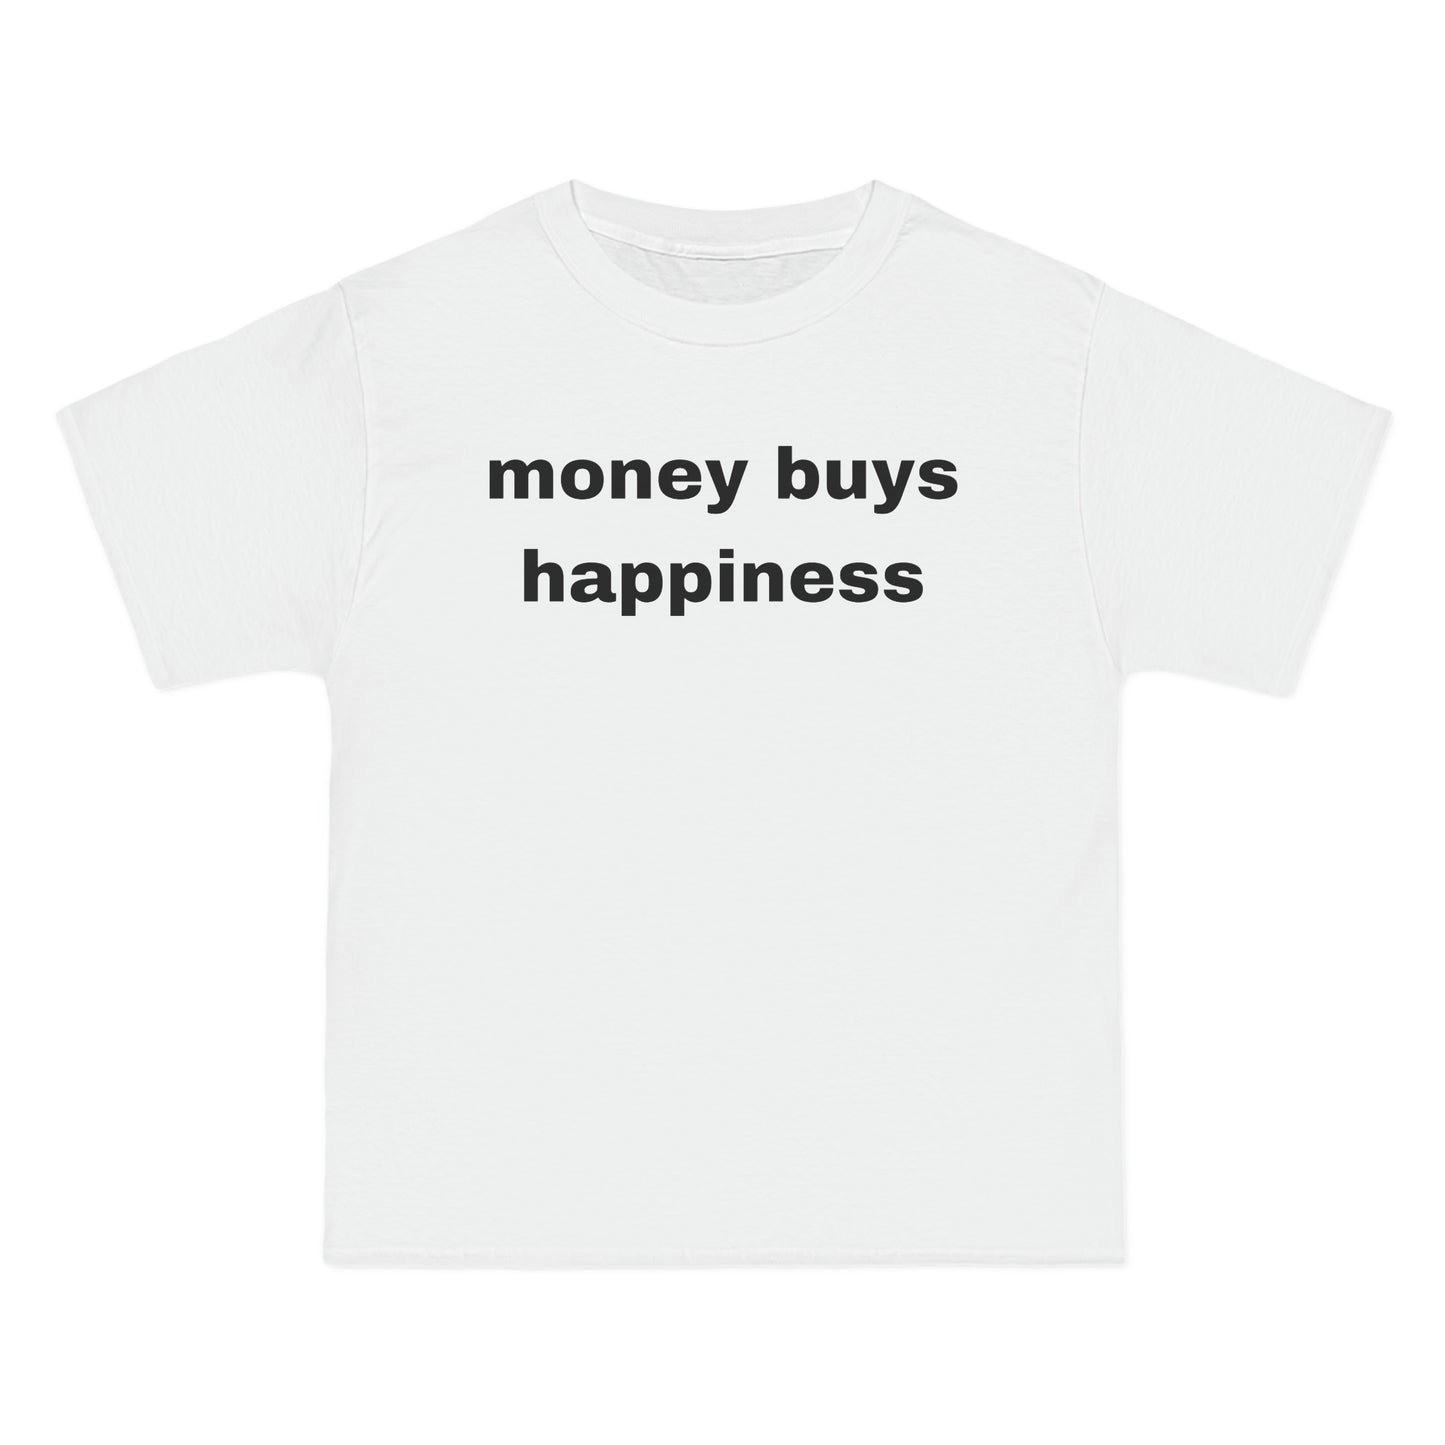 money buys happiness Tee